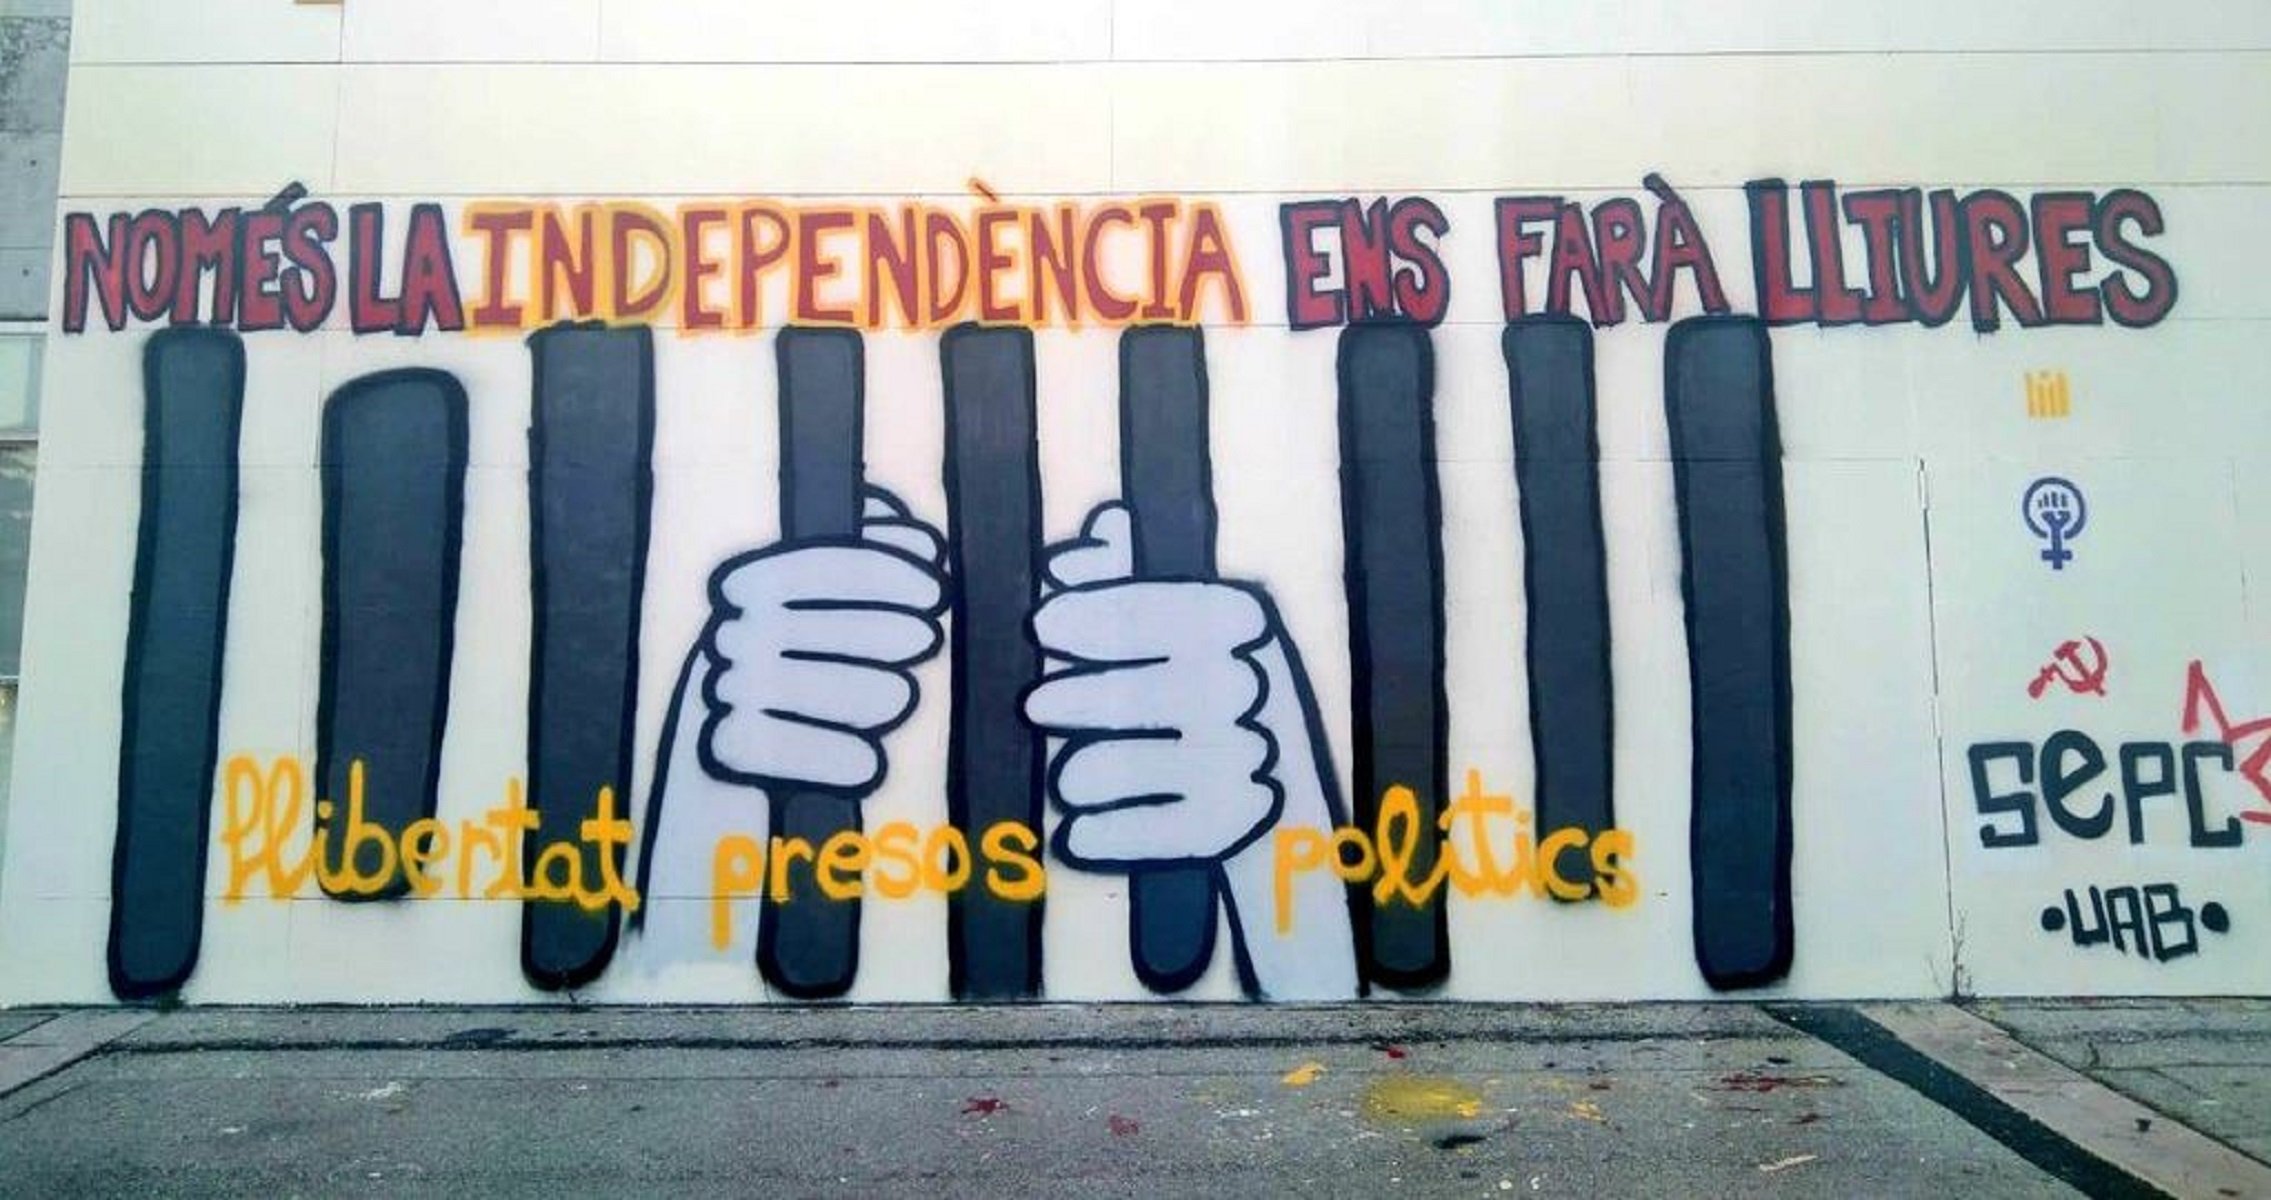 La Junta Electoral obliga la UAB a retirar murals i pintades independentistes